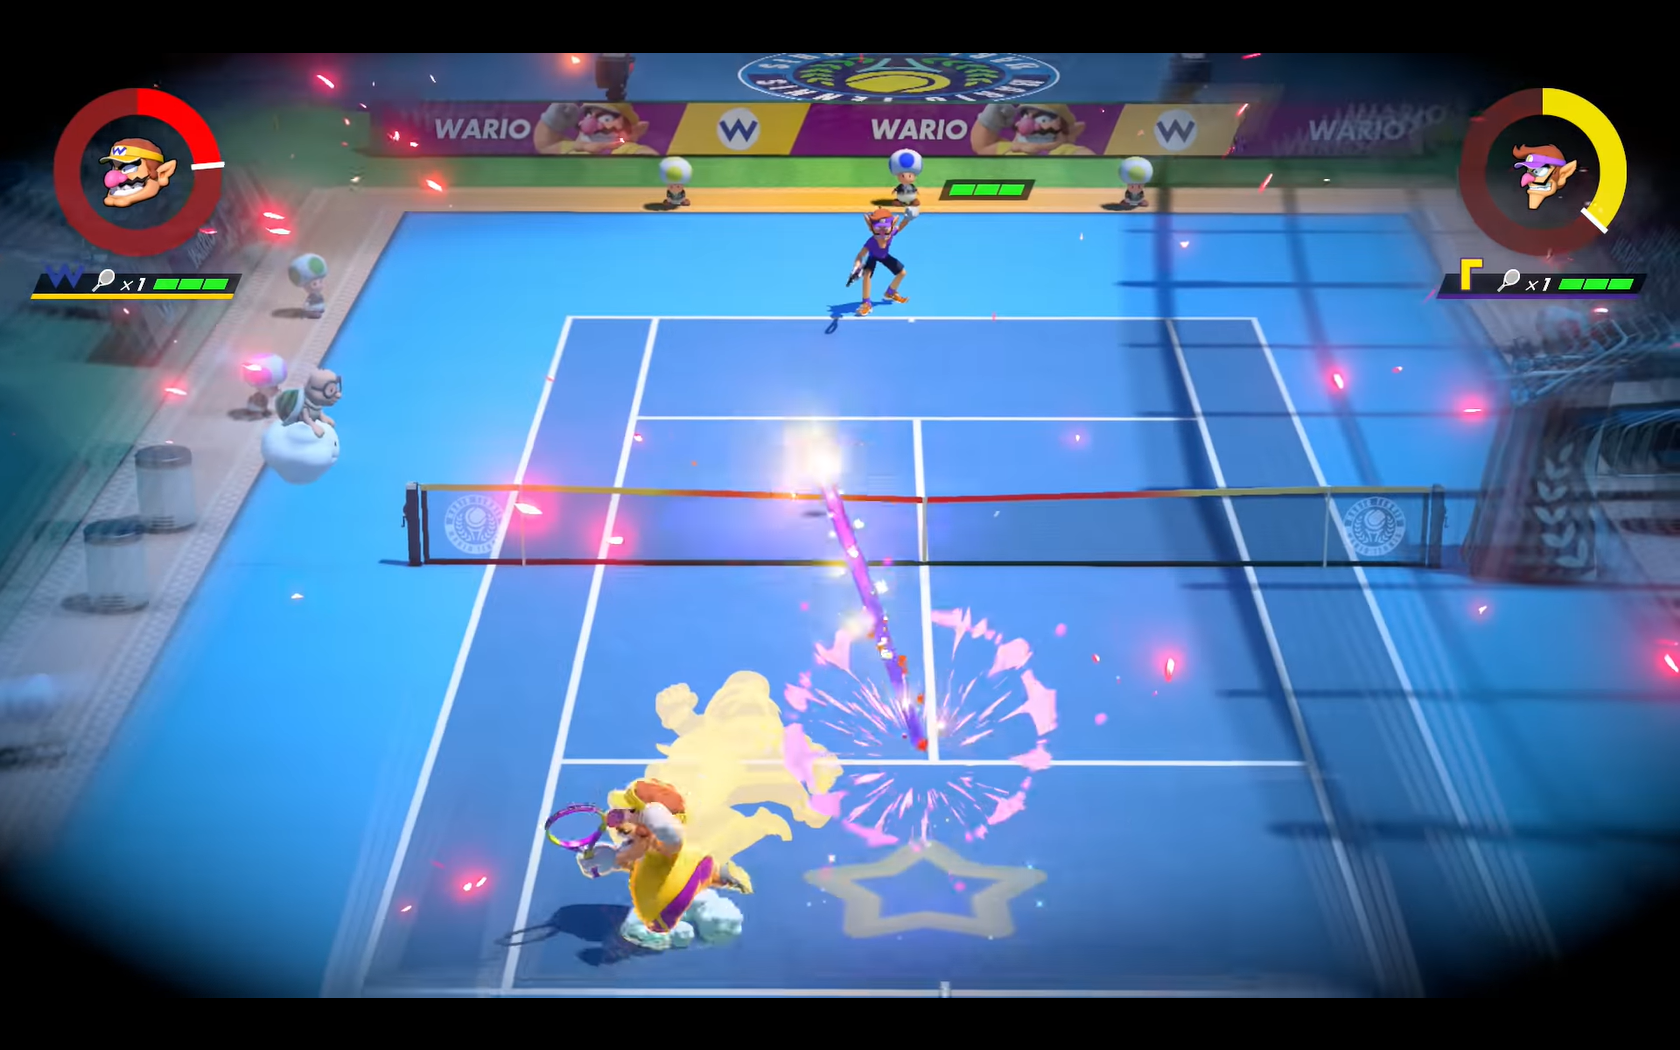 Nintendo mario tennis Aces